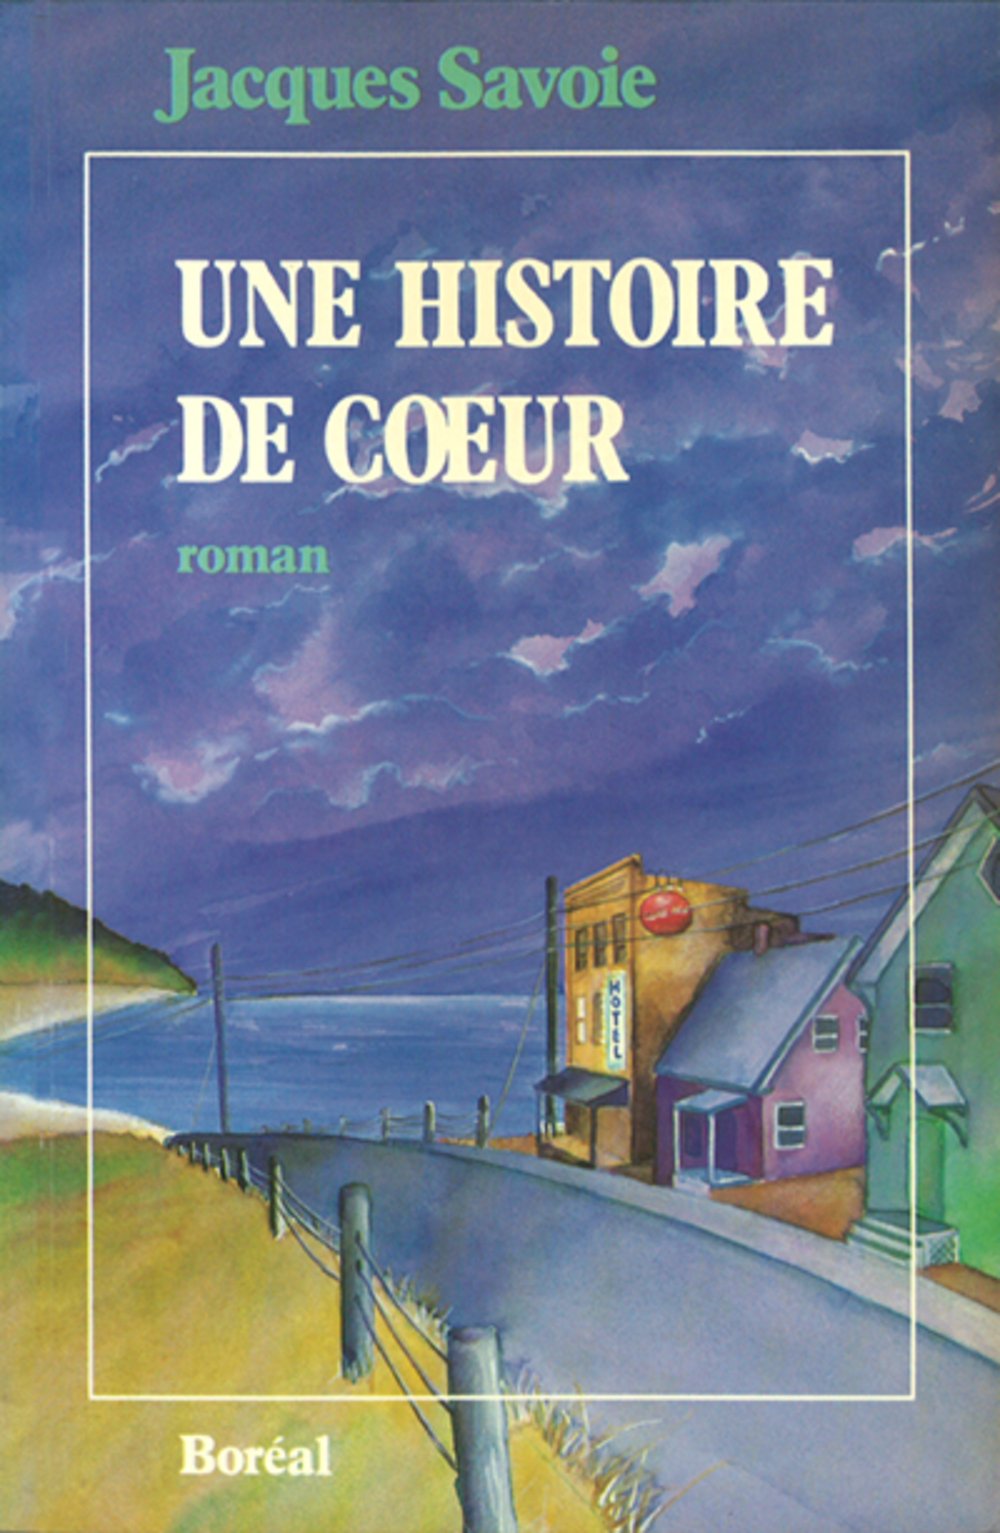 Livre ISBN 2890522628 Une histoire de coeur (Jacques Savoie)